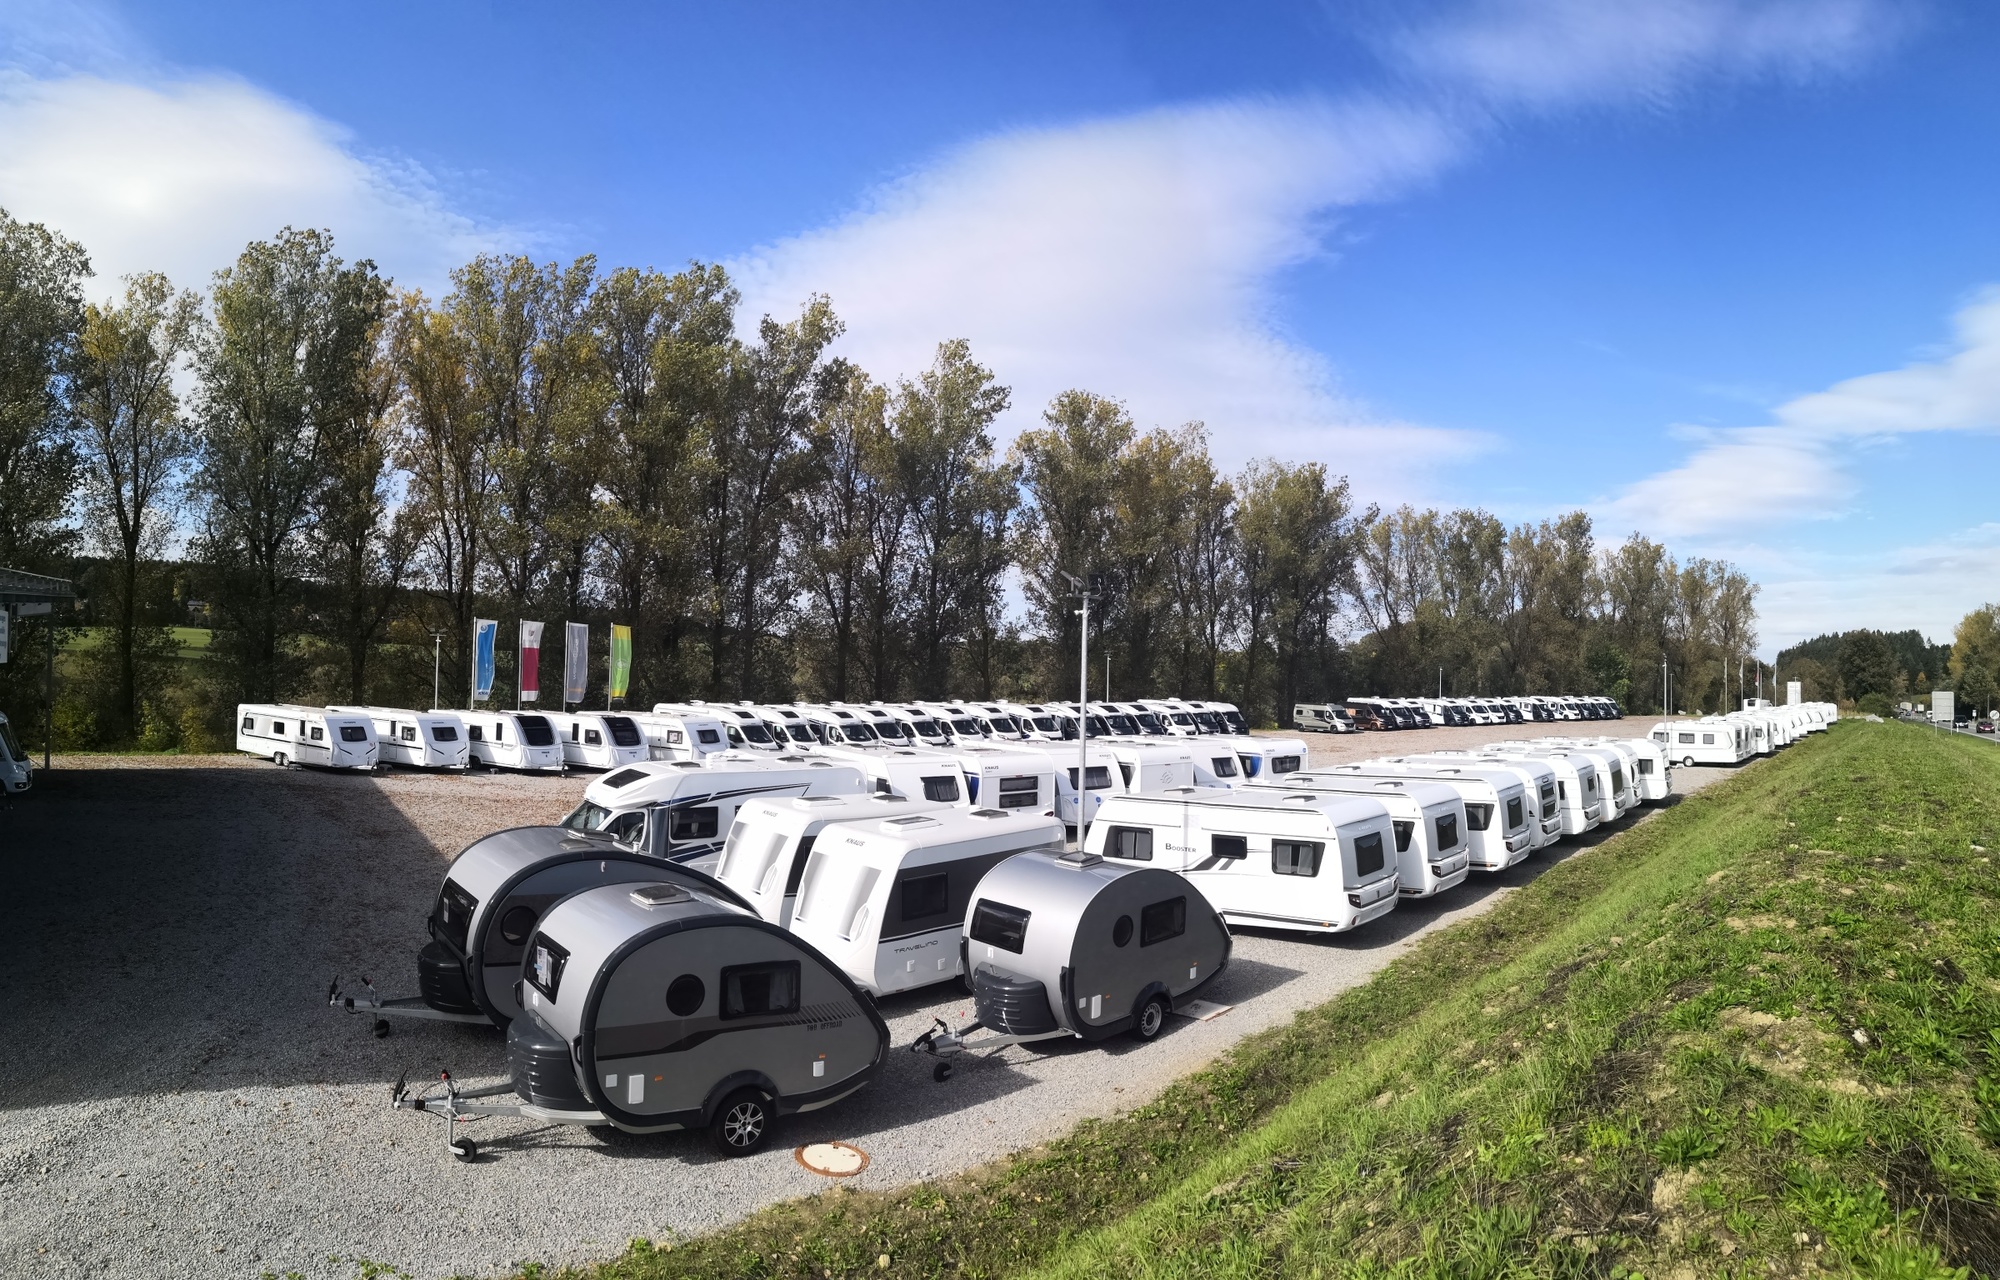 Camping Freizeit Dorn oHG - Satılık araçlar undefined: fotoğraf 5